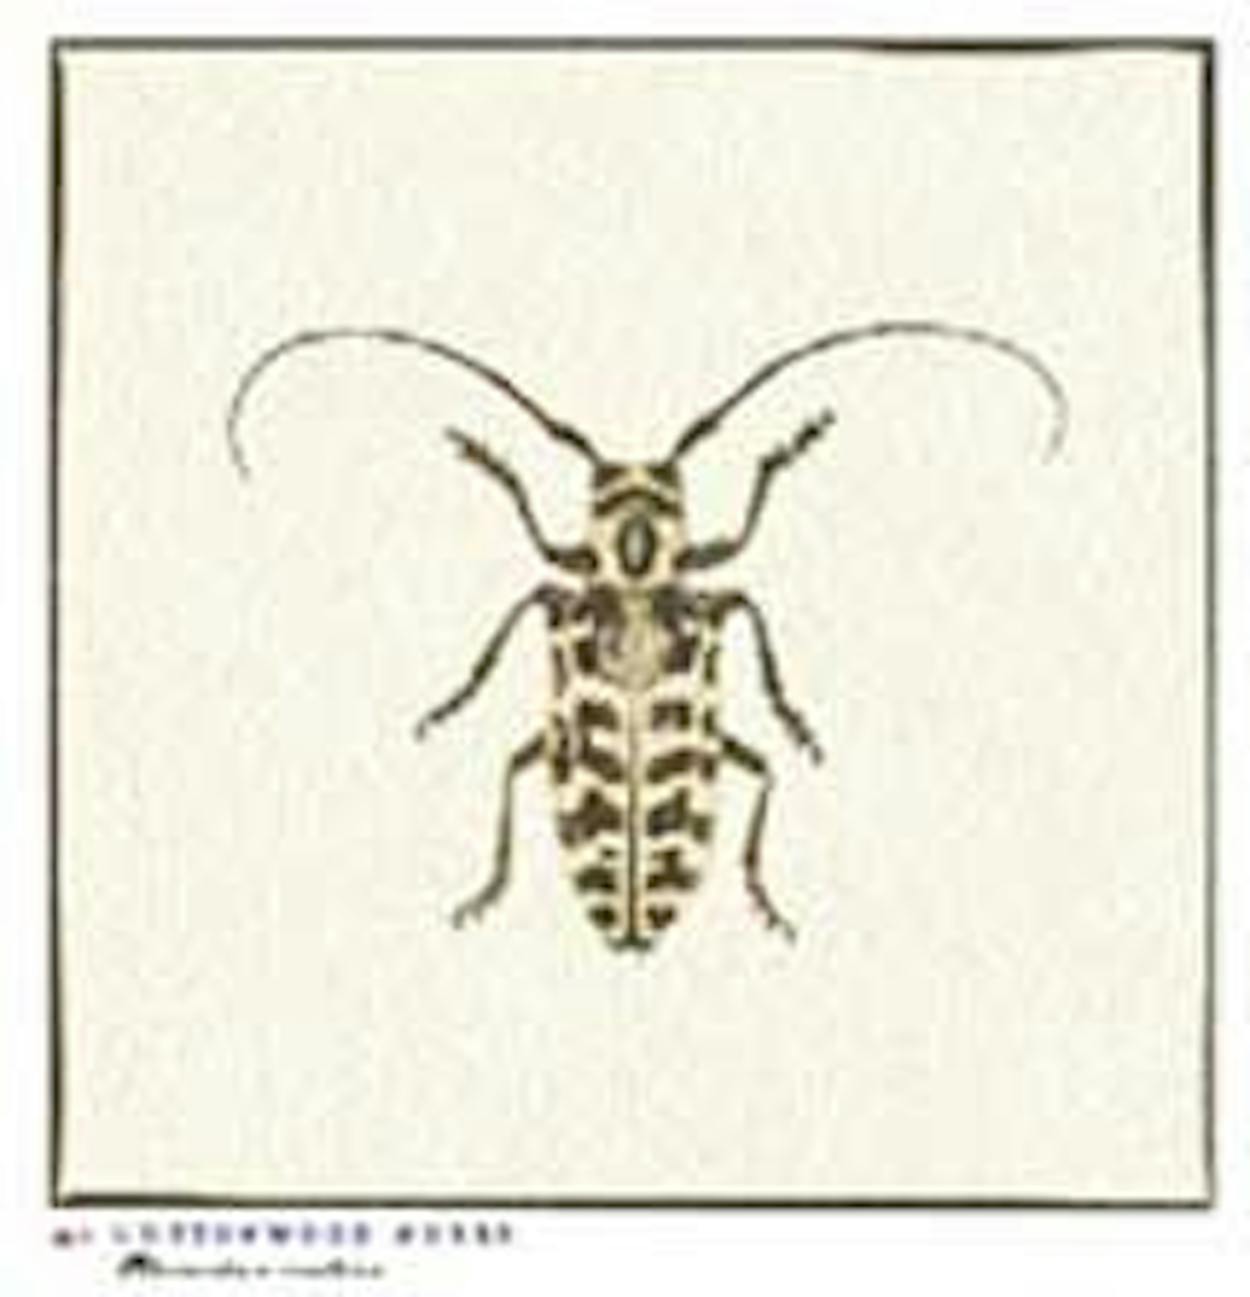 Texas beetle Cottonwood Borer